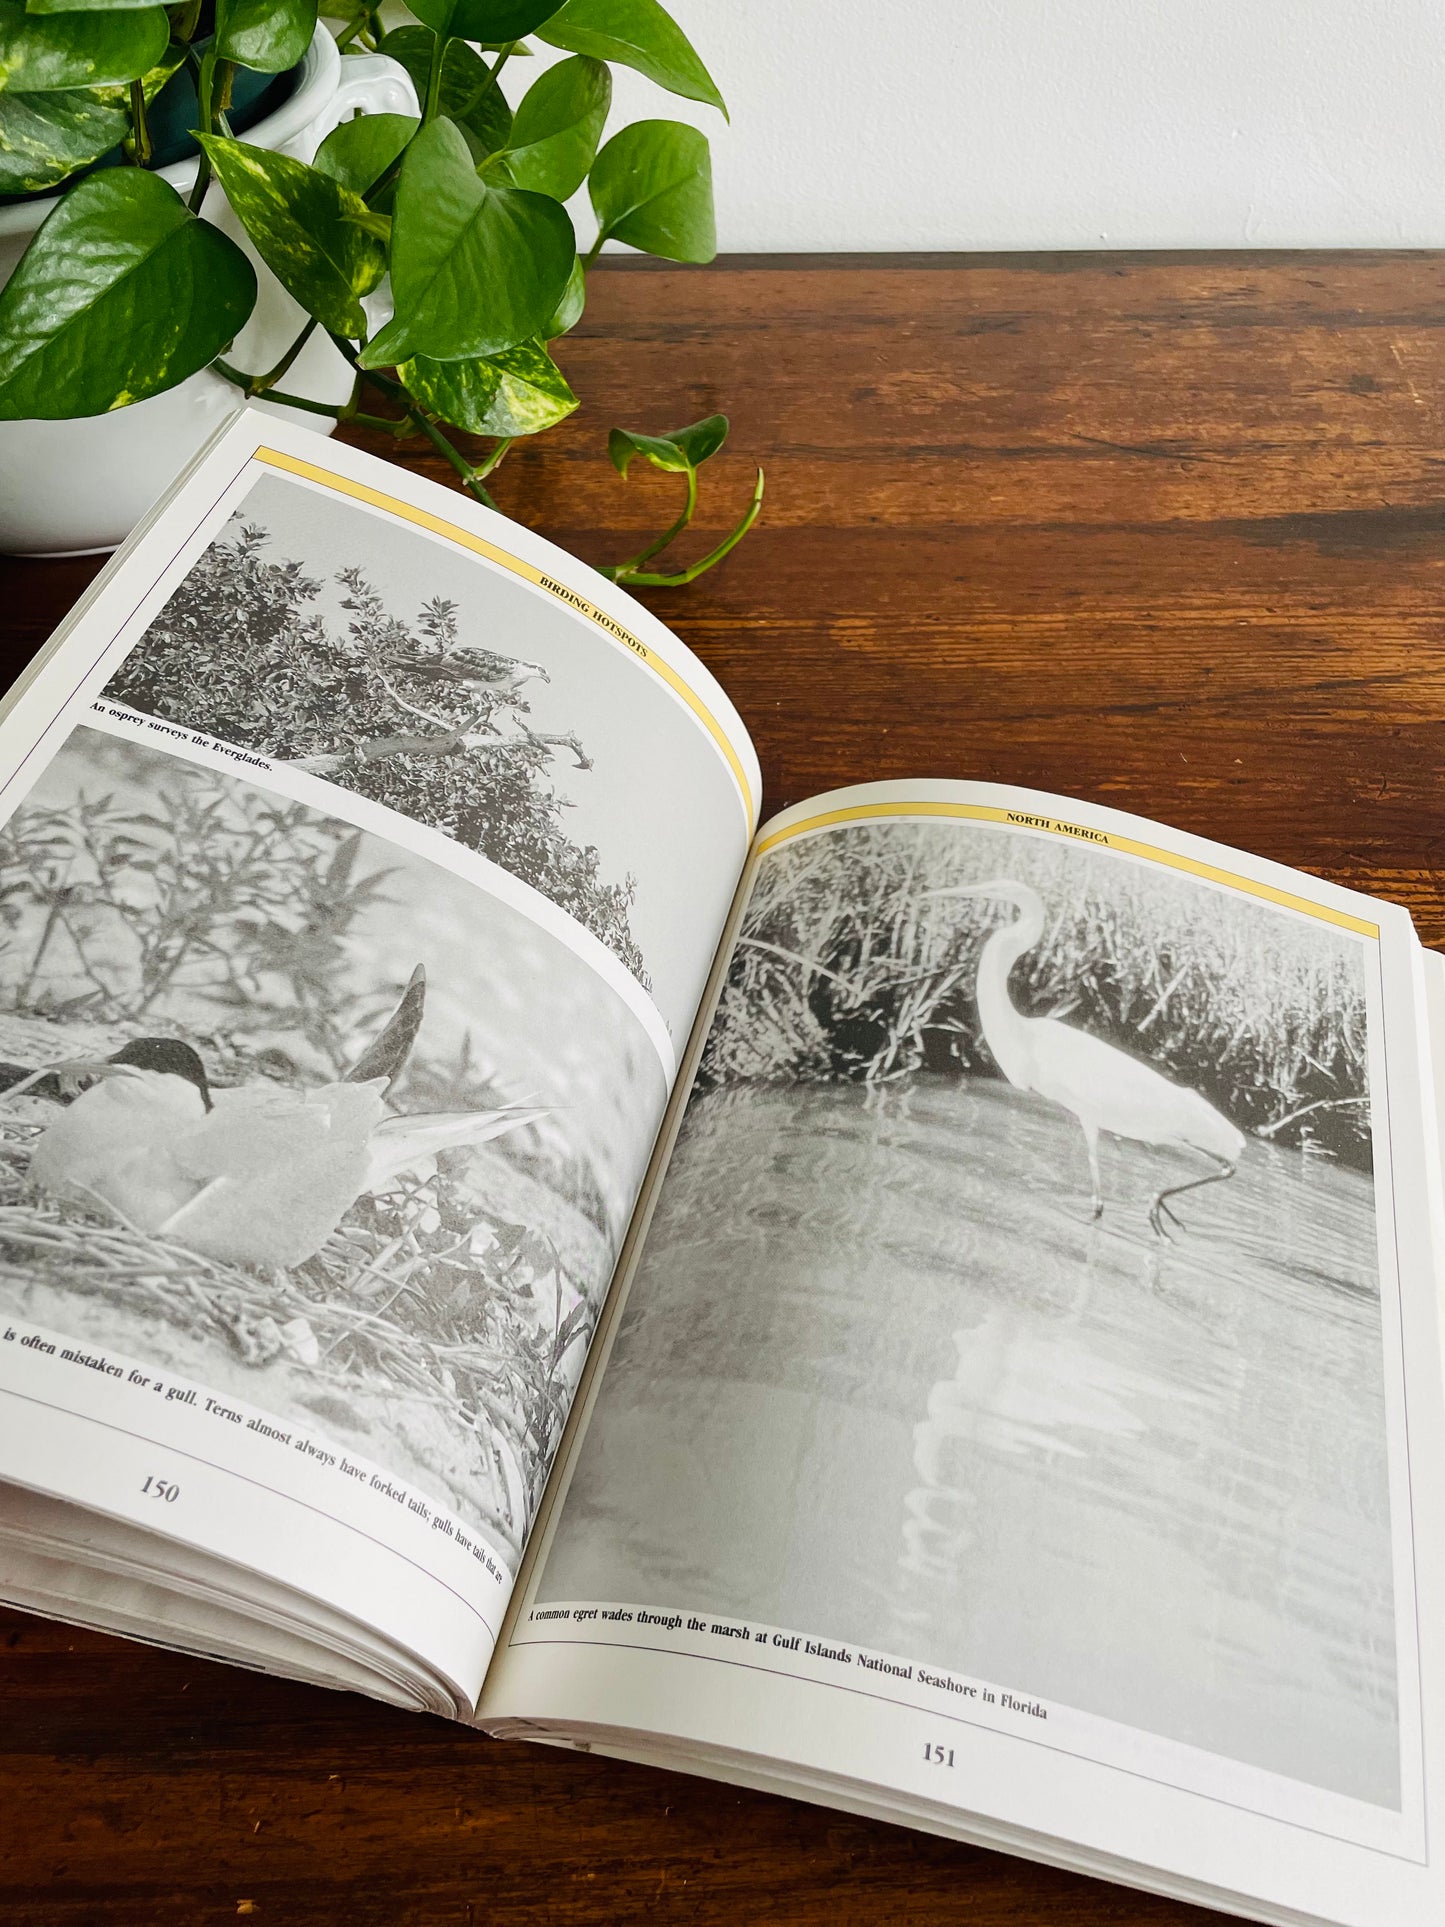 The Birder's Catalogue: The Sourcebook for Birding Paraphernalia (1989)